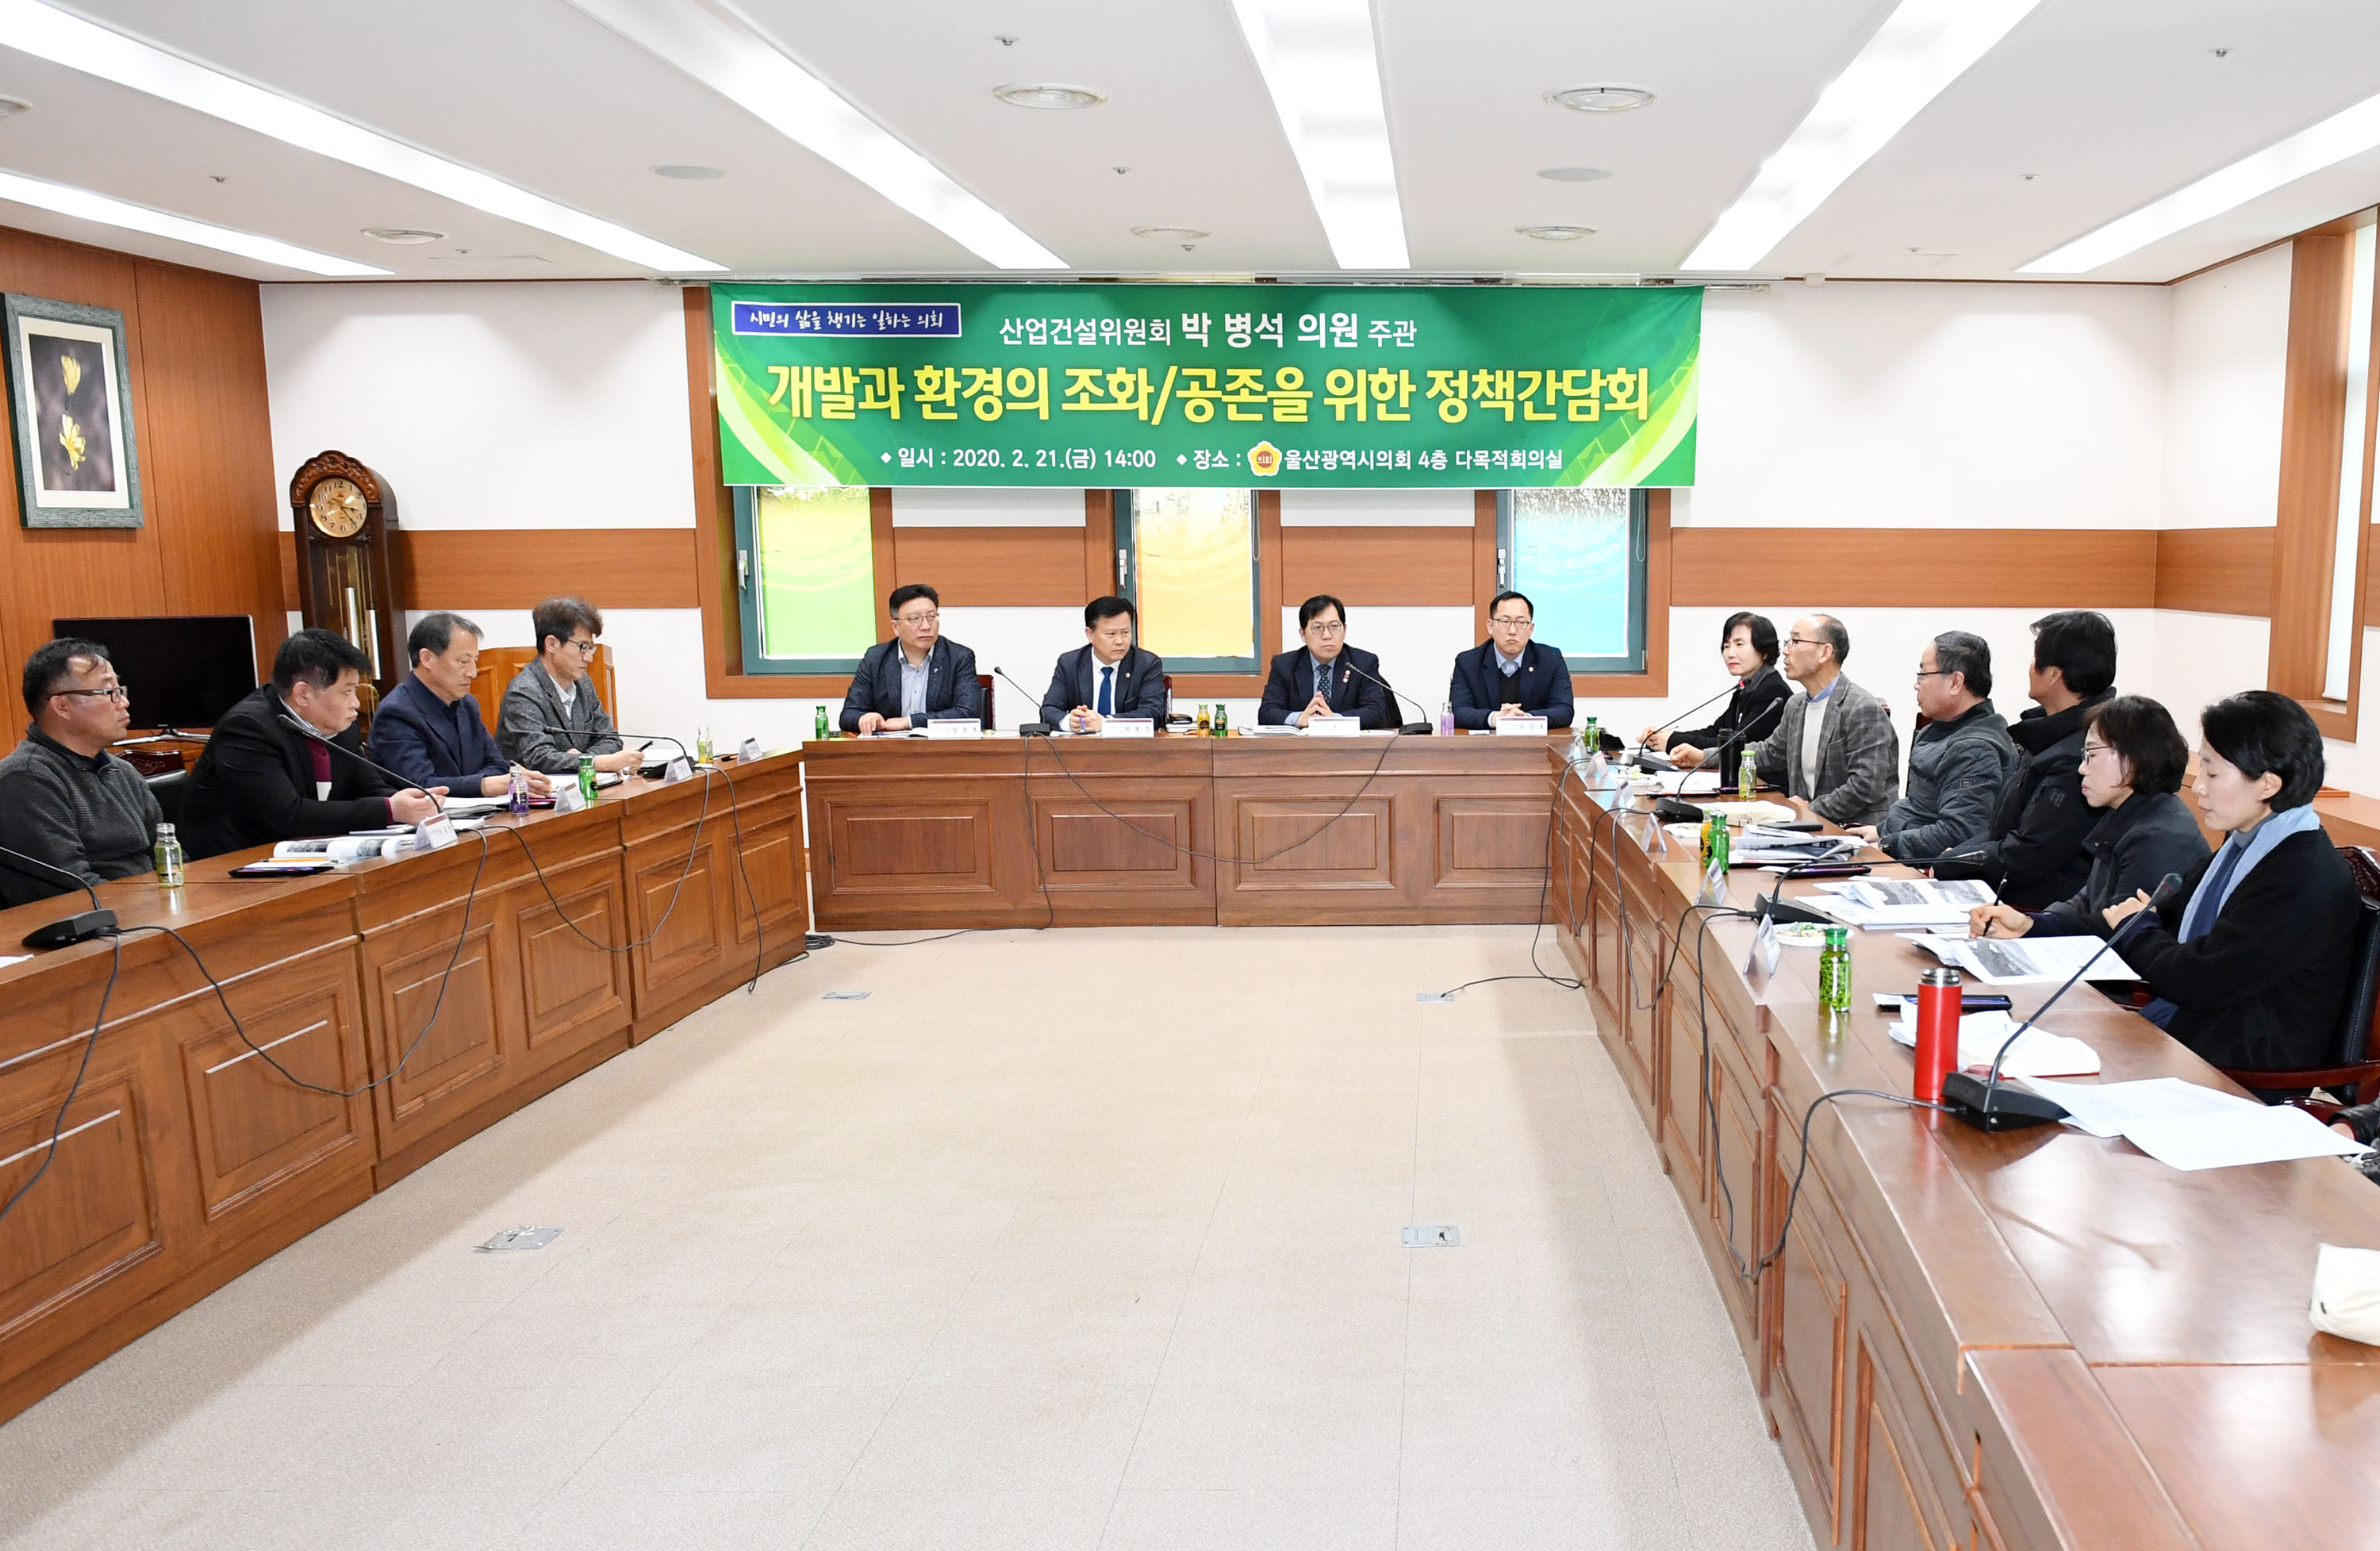 박병석 의원 개발과 환경의 조화/공존을 위한 정책간담회 개최6